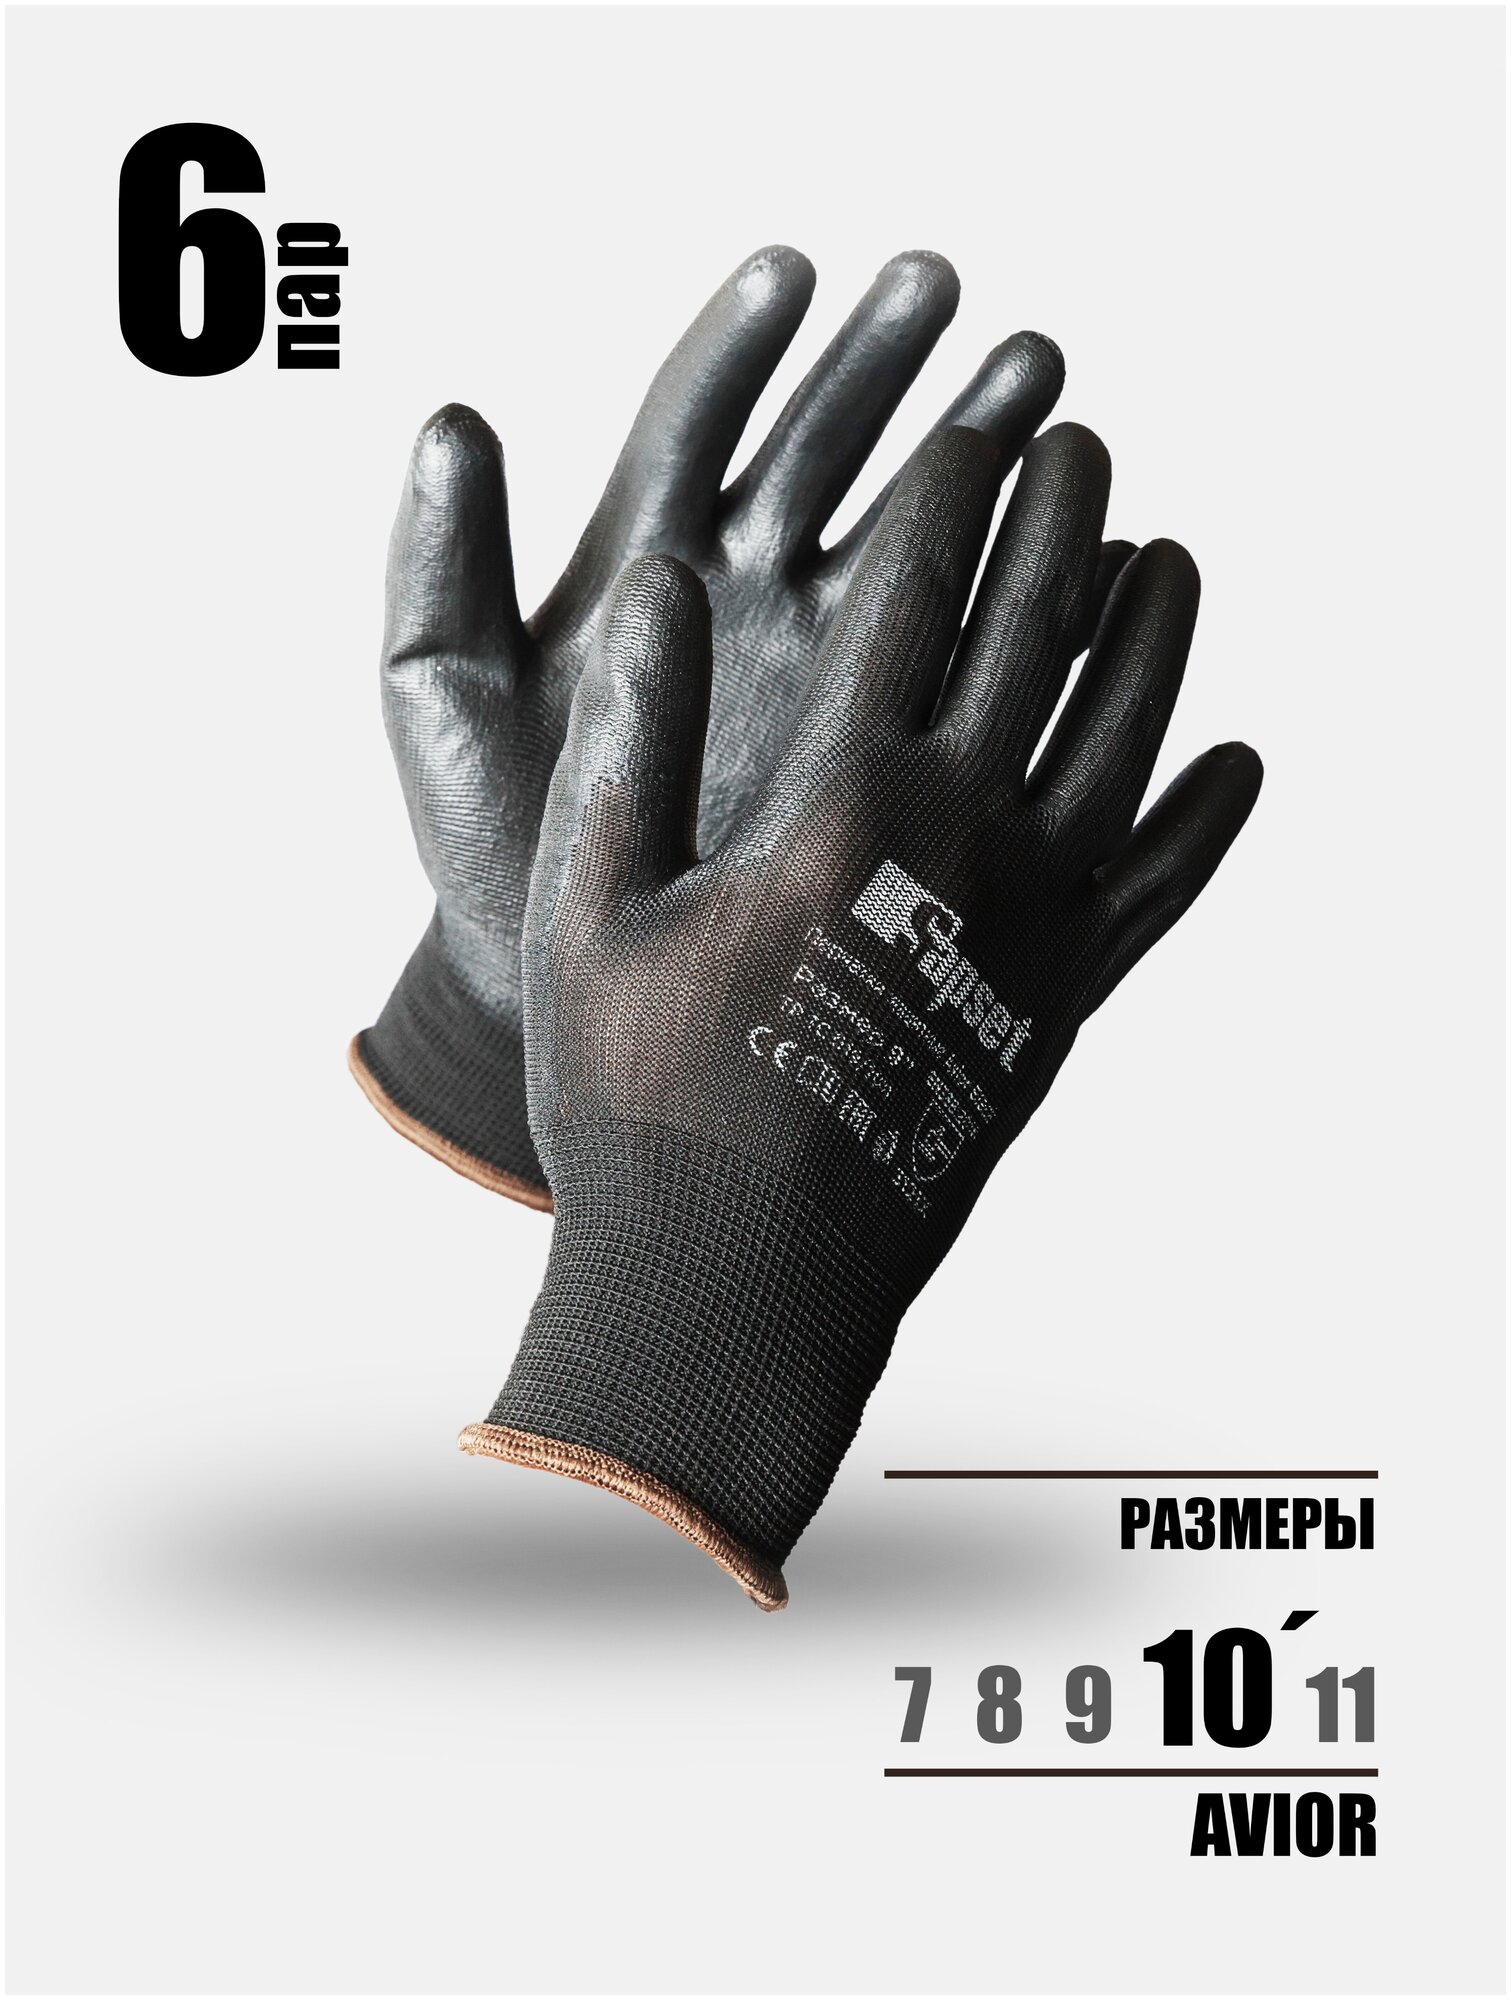 Перчатки защитные рабочие / Для работы в саду и с розами/ Для складских и строительных работ с покрытием из полиуретана Avior Black 6 ПАР, размер 10